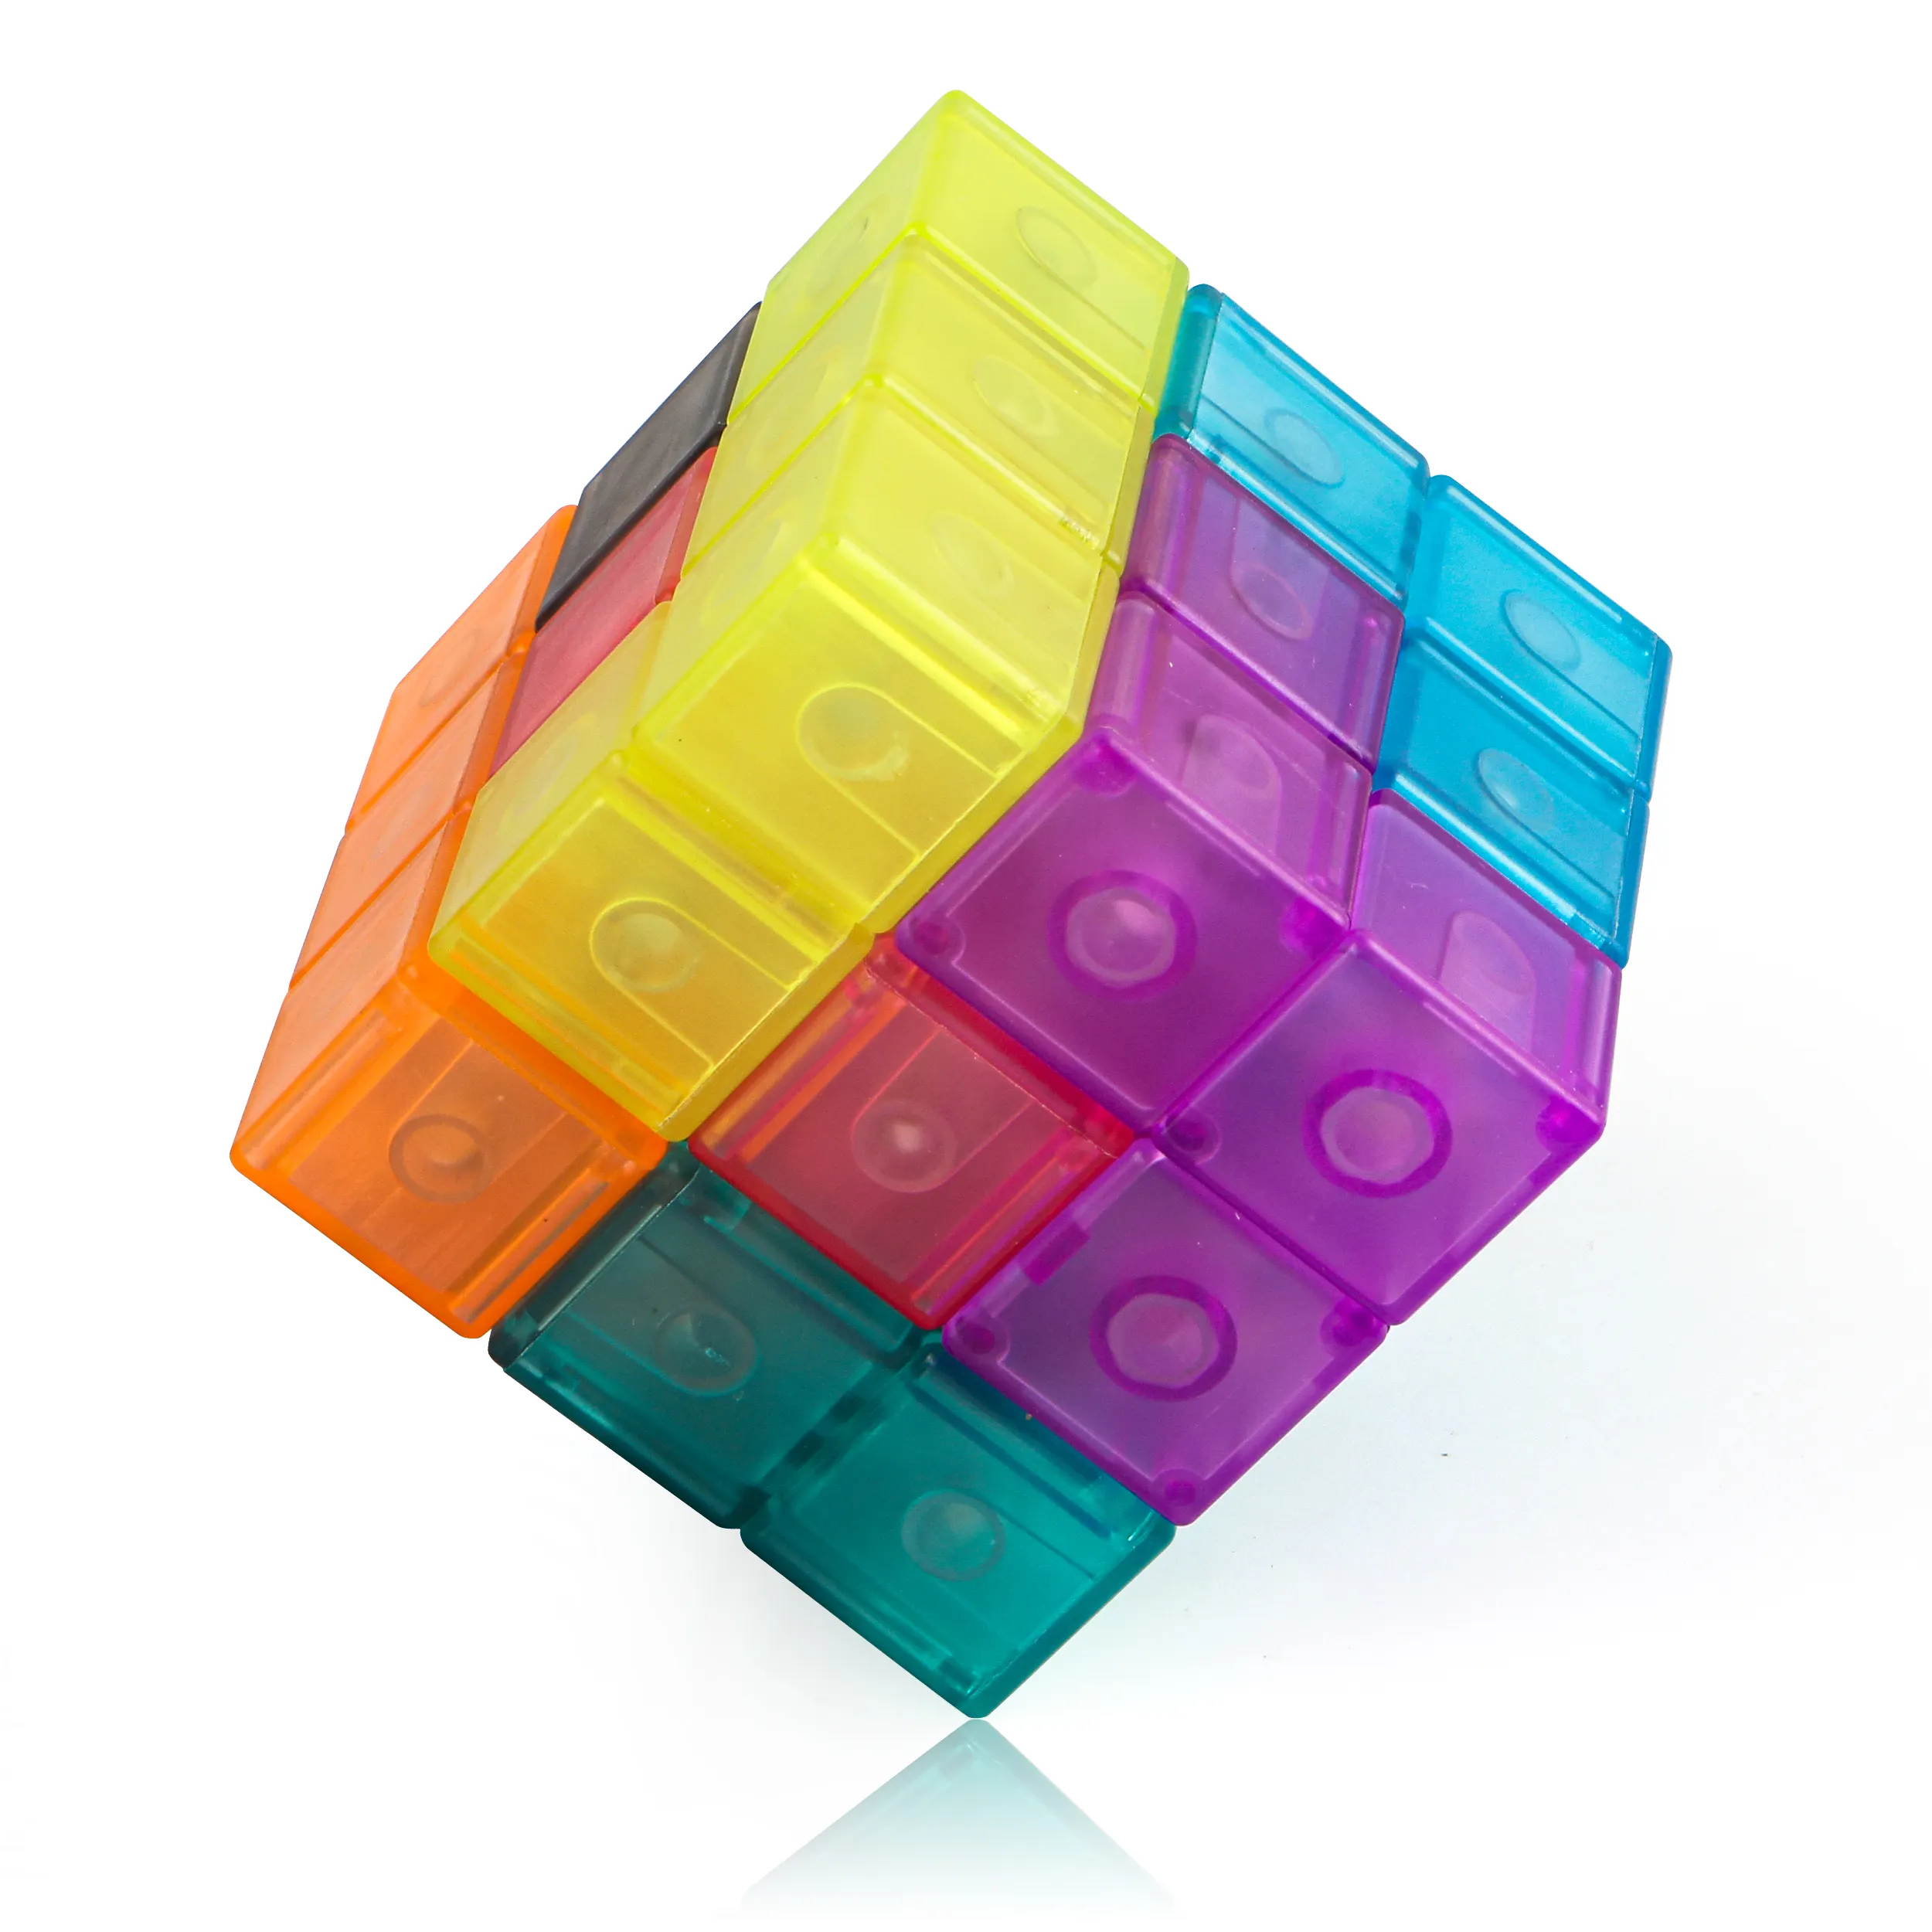 Cube magique Cube magnétique jouet Puzzle jouet aimant jouets Cube